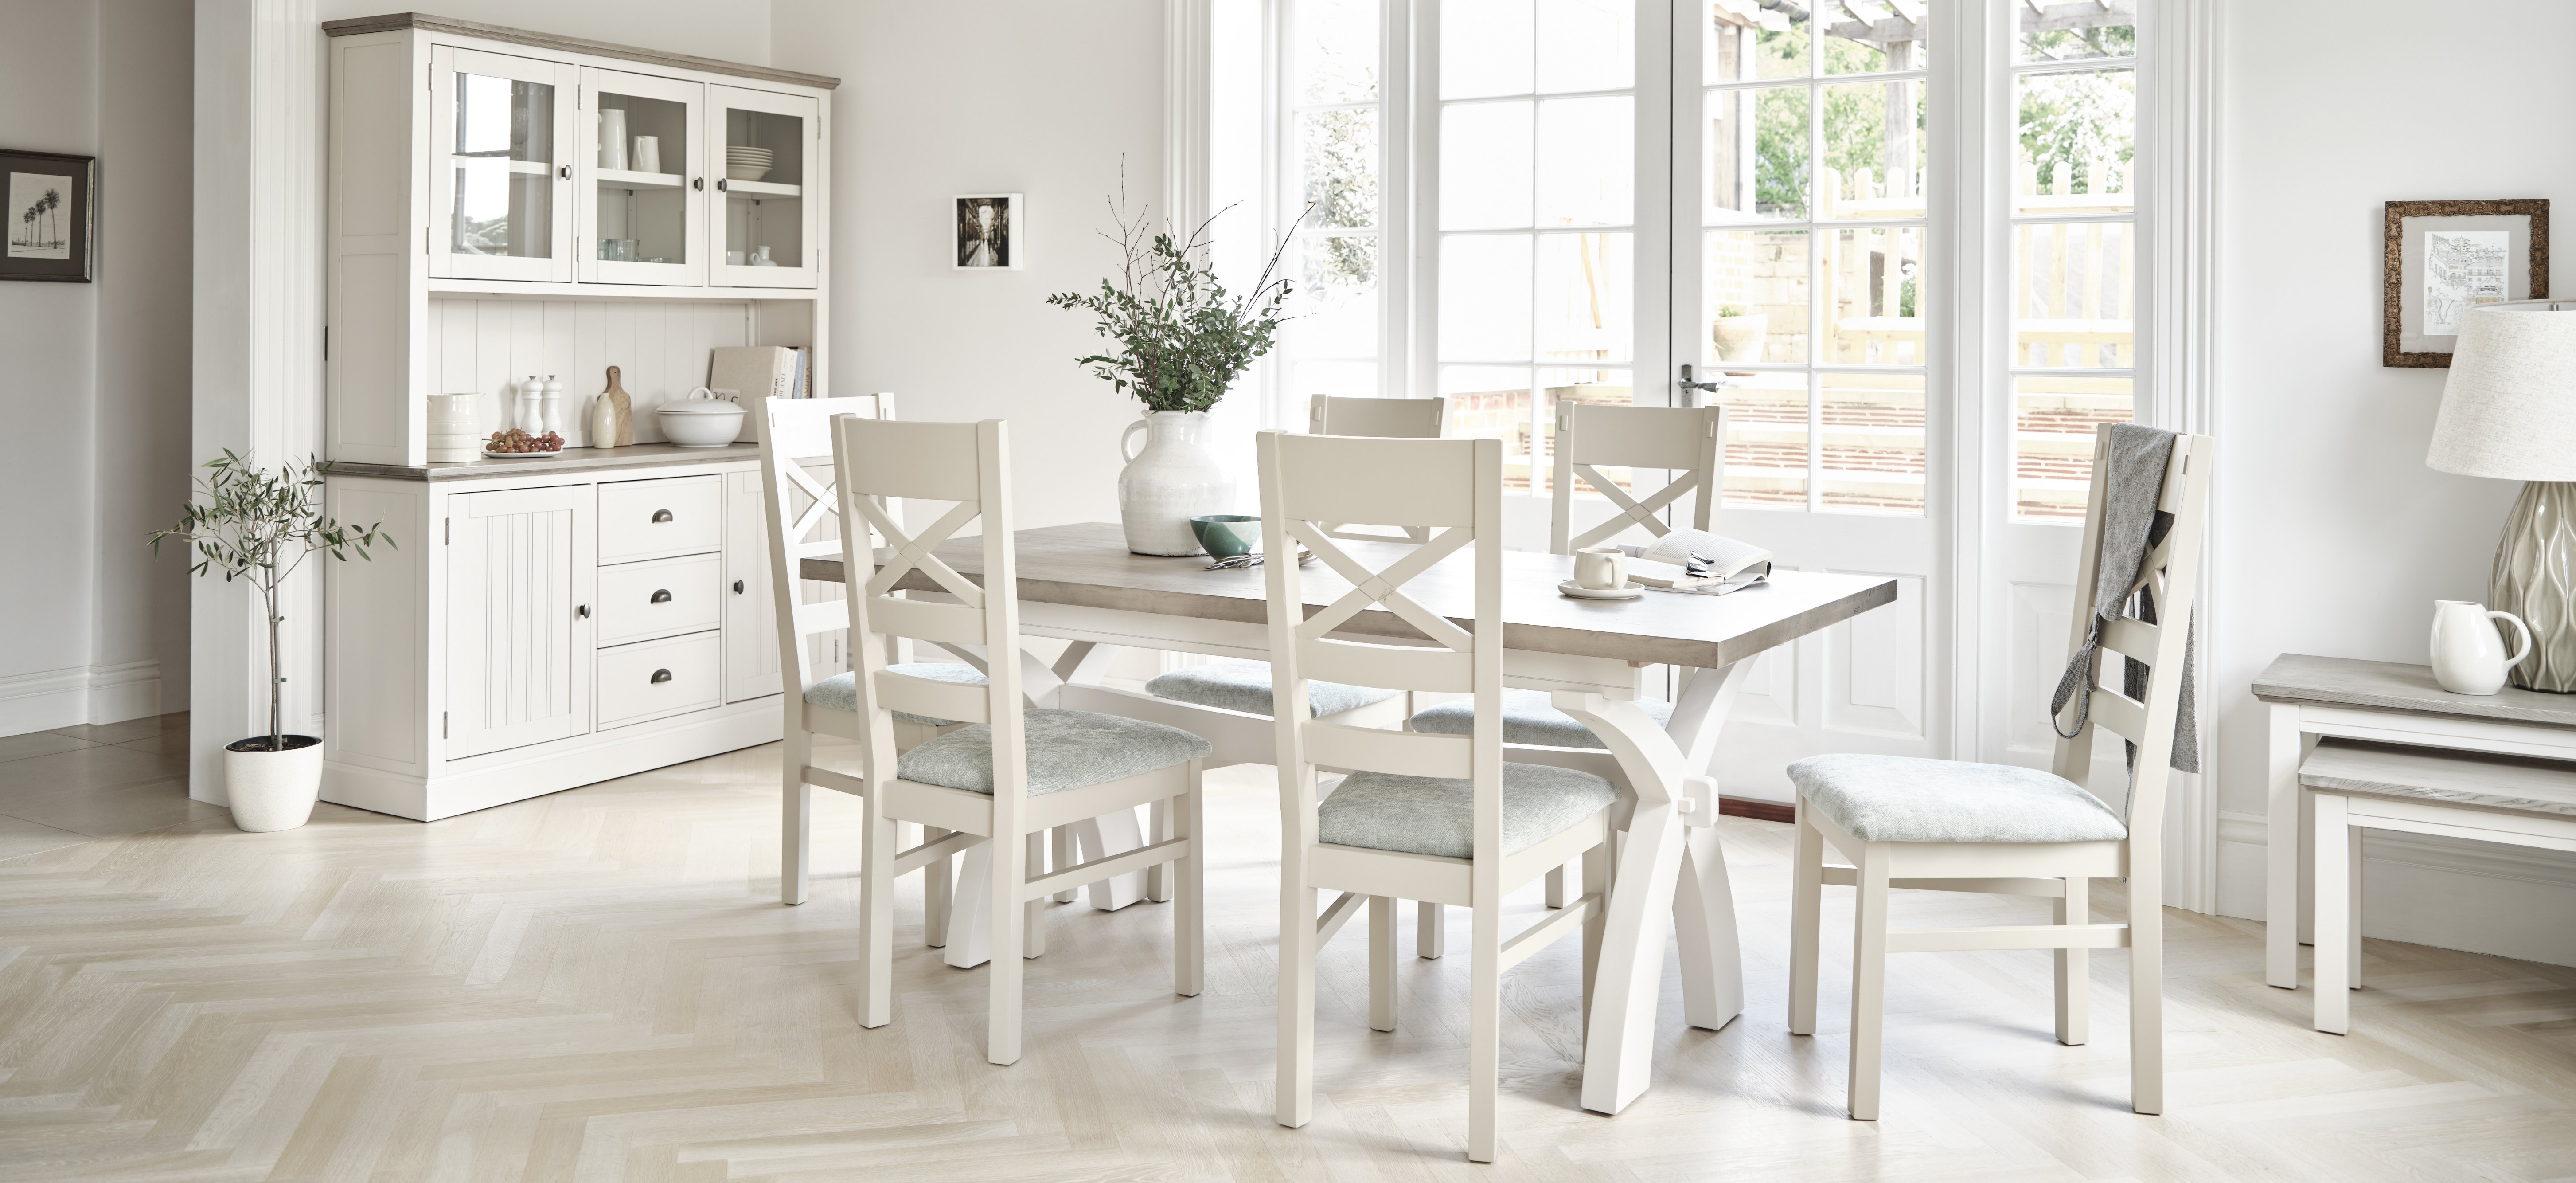 Oak furnitureland brompton dining set